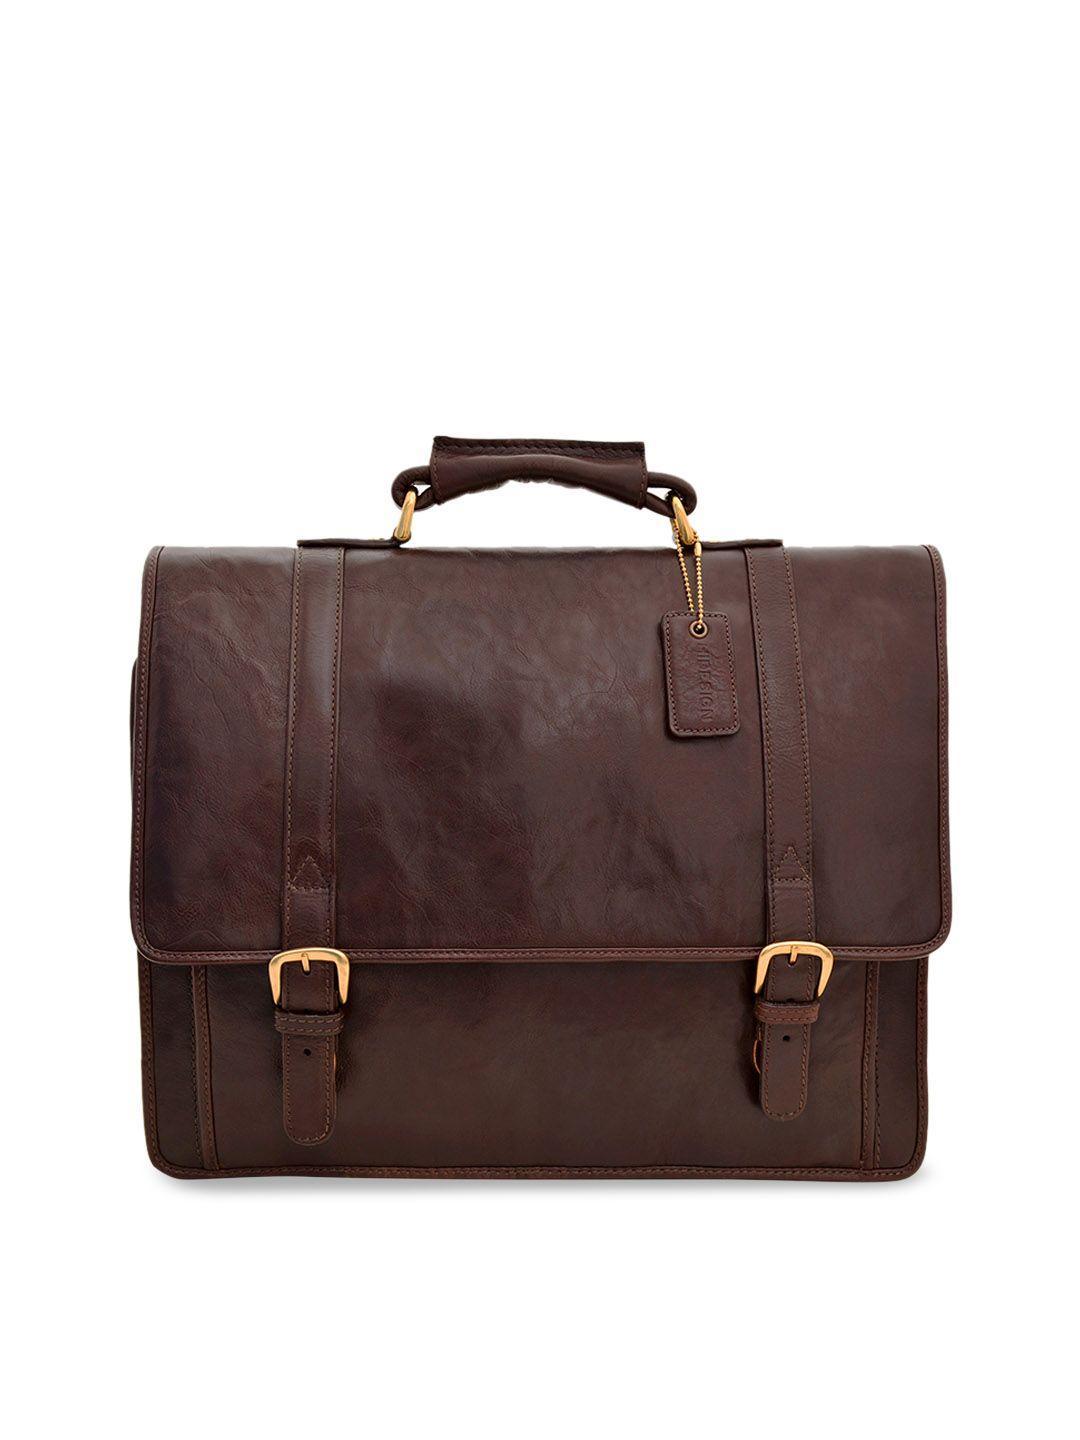 hidesign men brown solid laptop bag